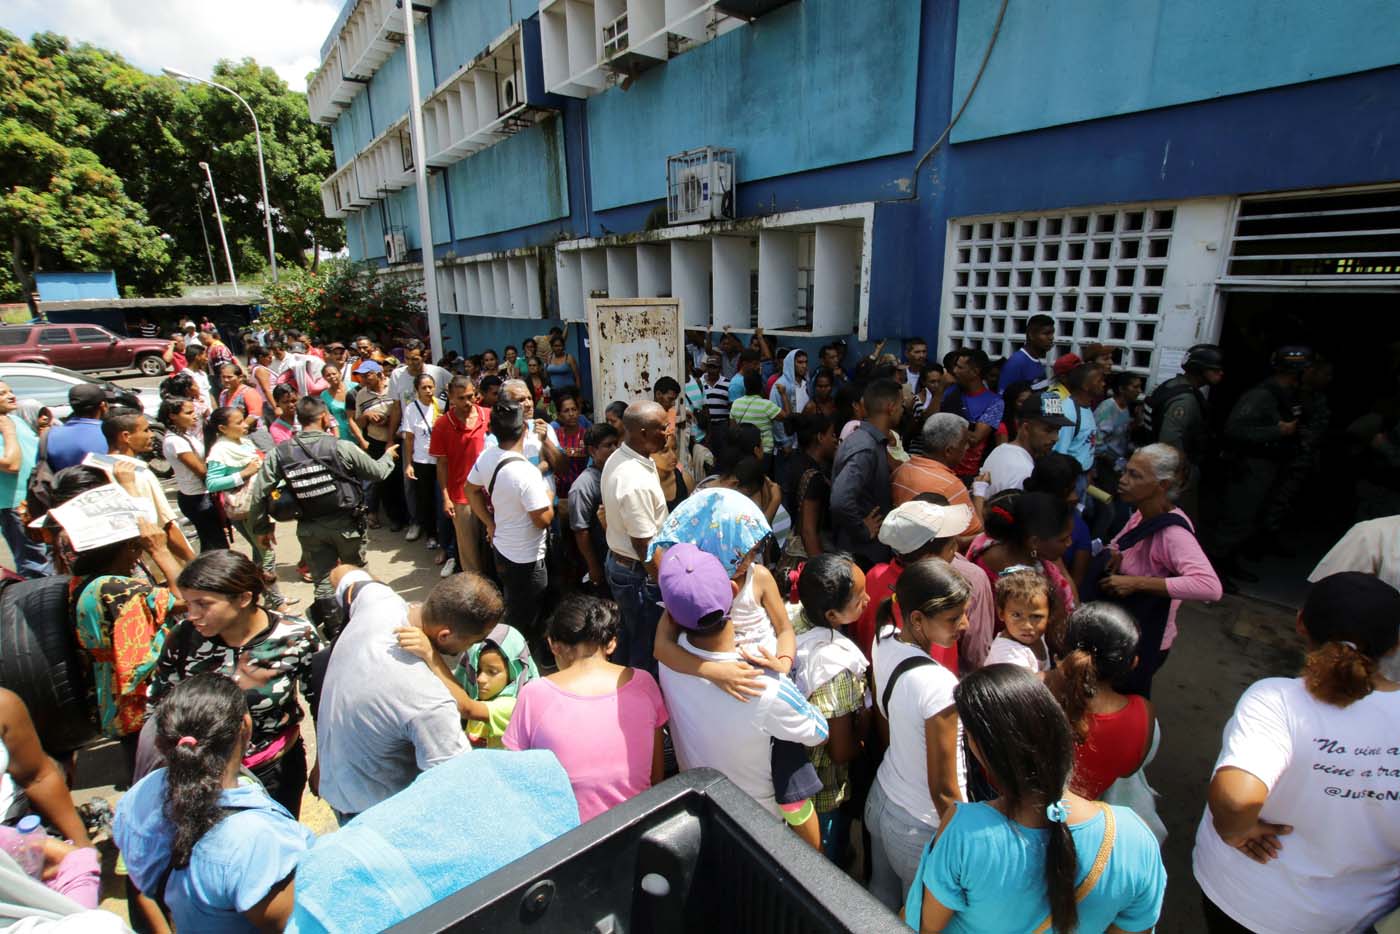 La malaria avanza en Venezuela entre la escasez y la crisis (fotos)